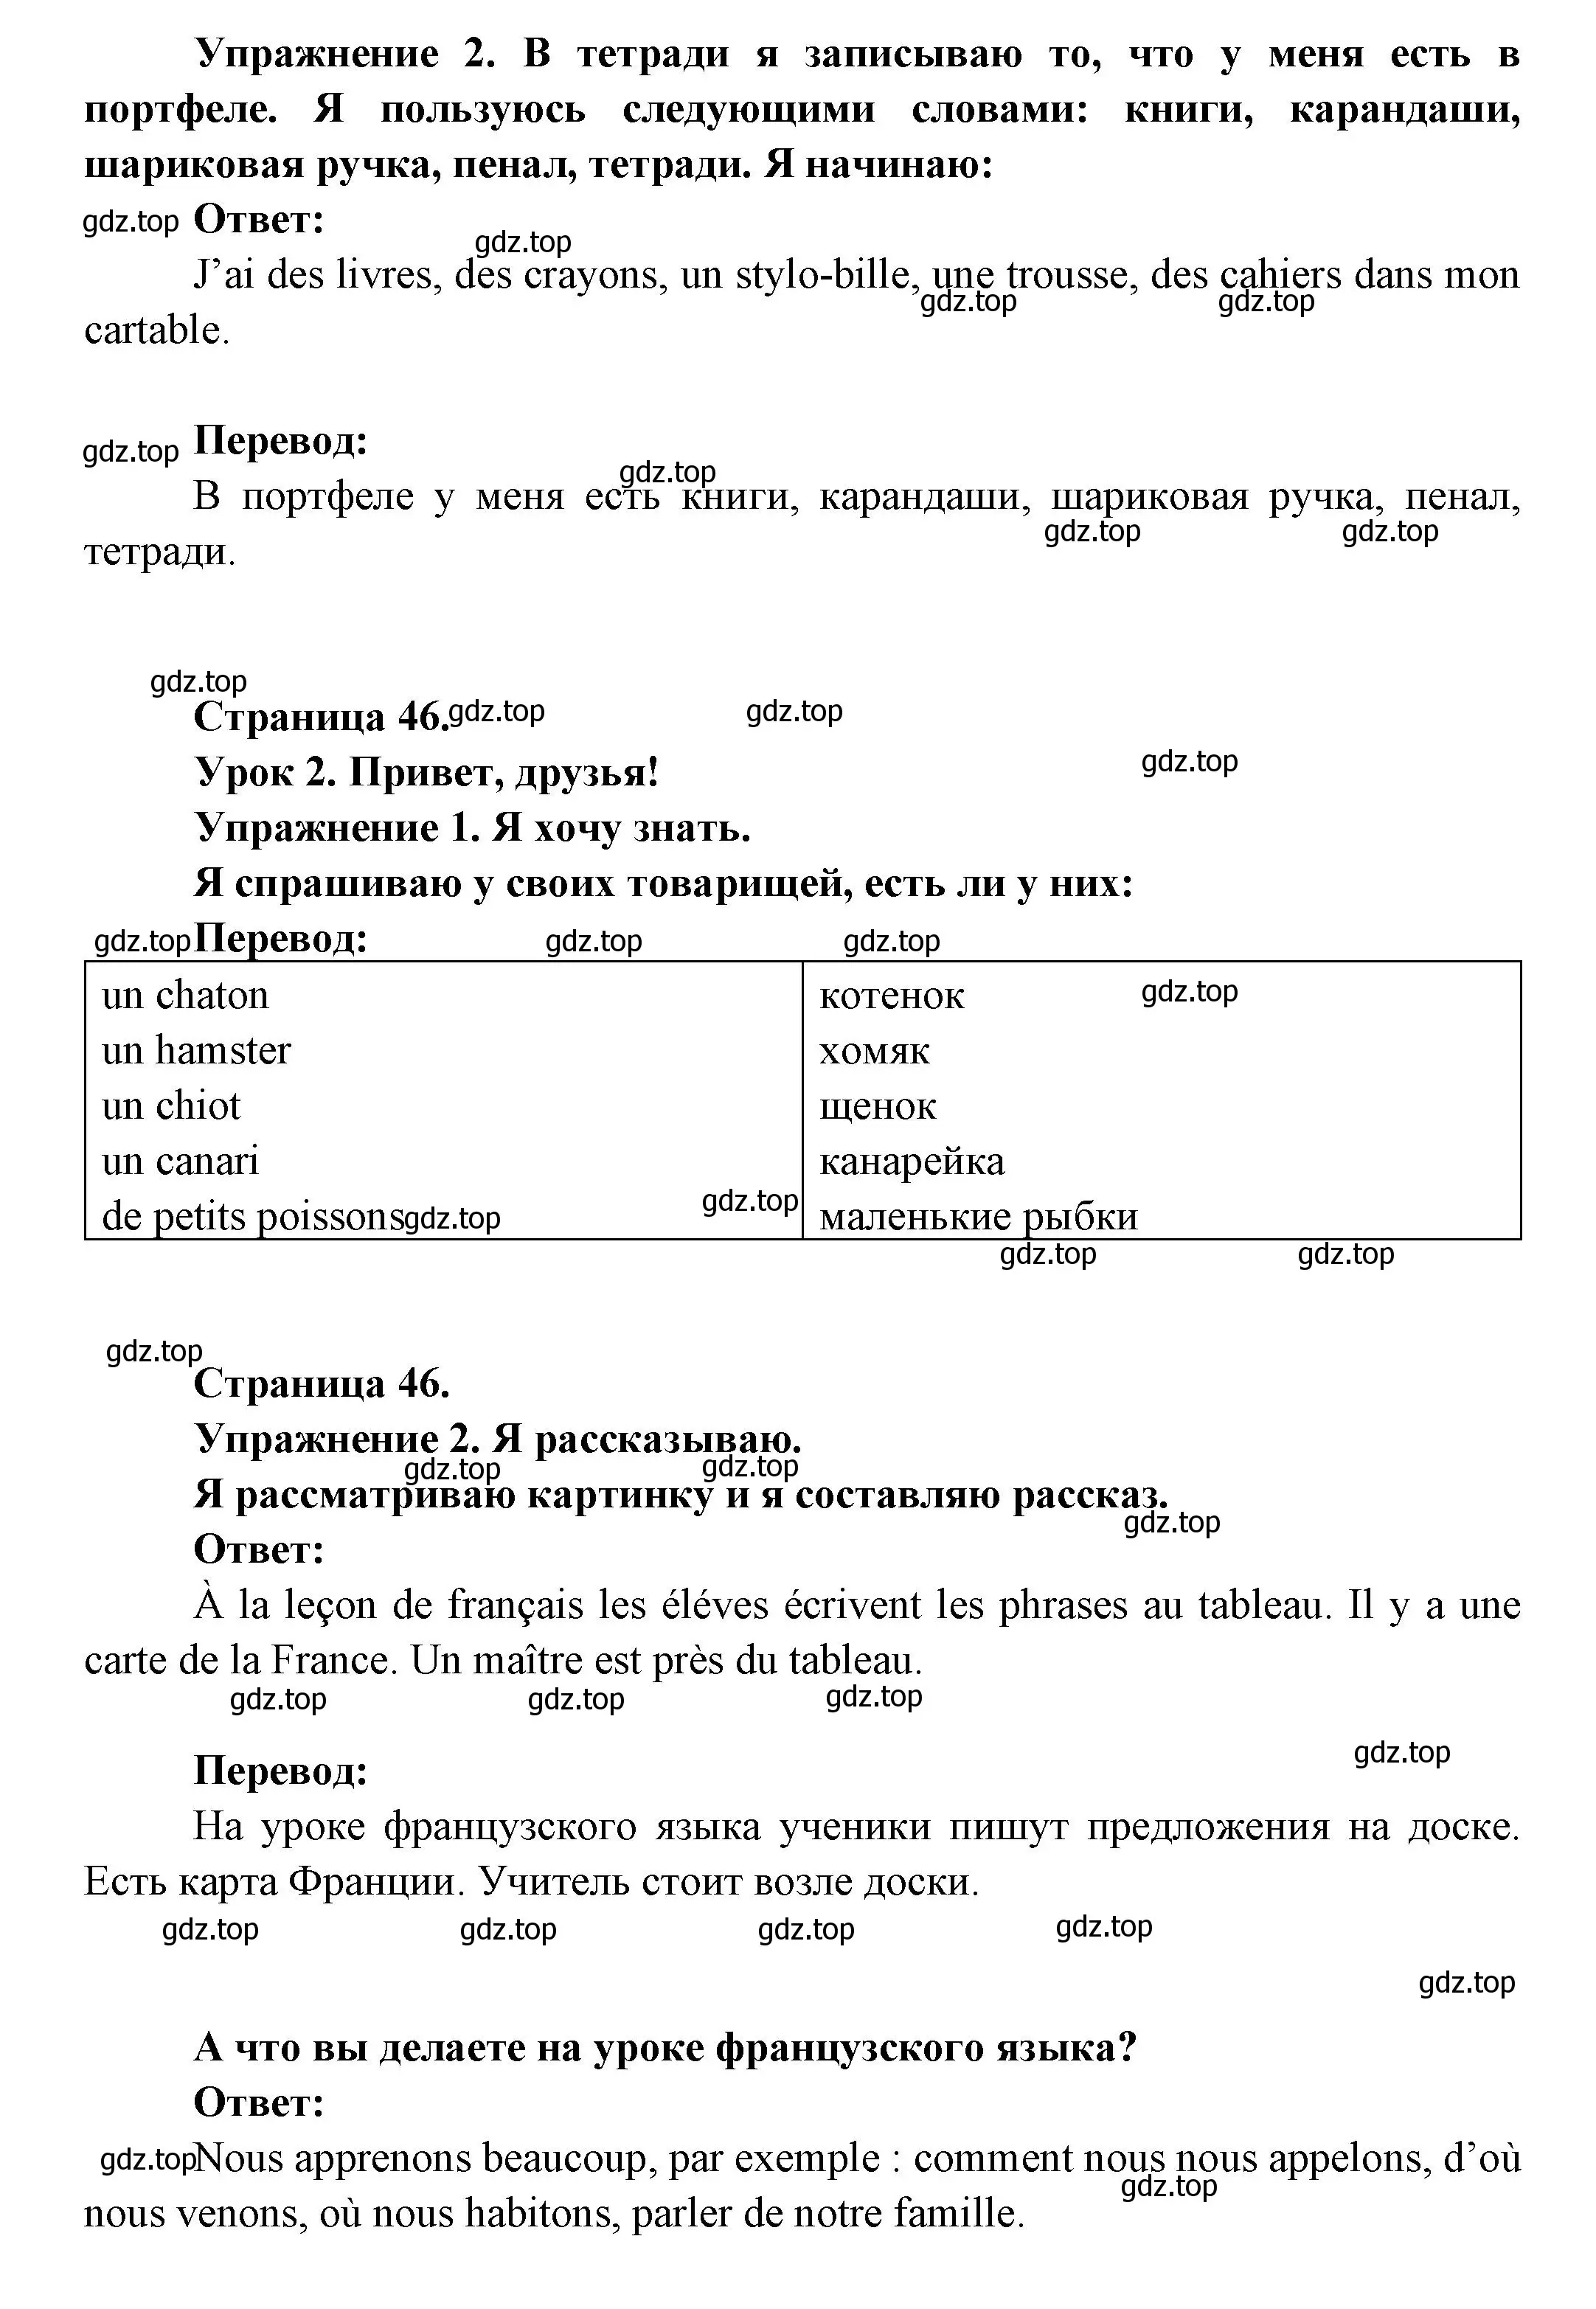 Решение  46 (страница 46) гдз по французскому языку 3 класс Кулигин, Кирьянова, учебник 1 часть